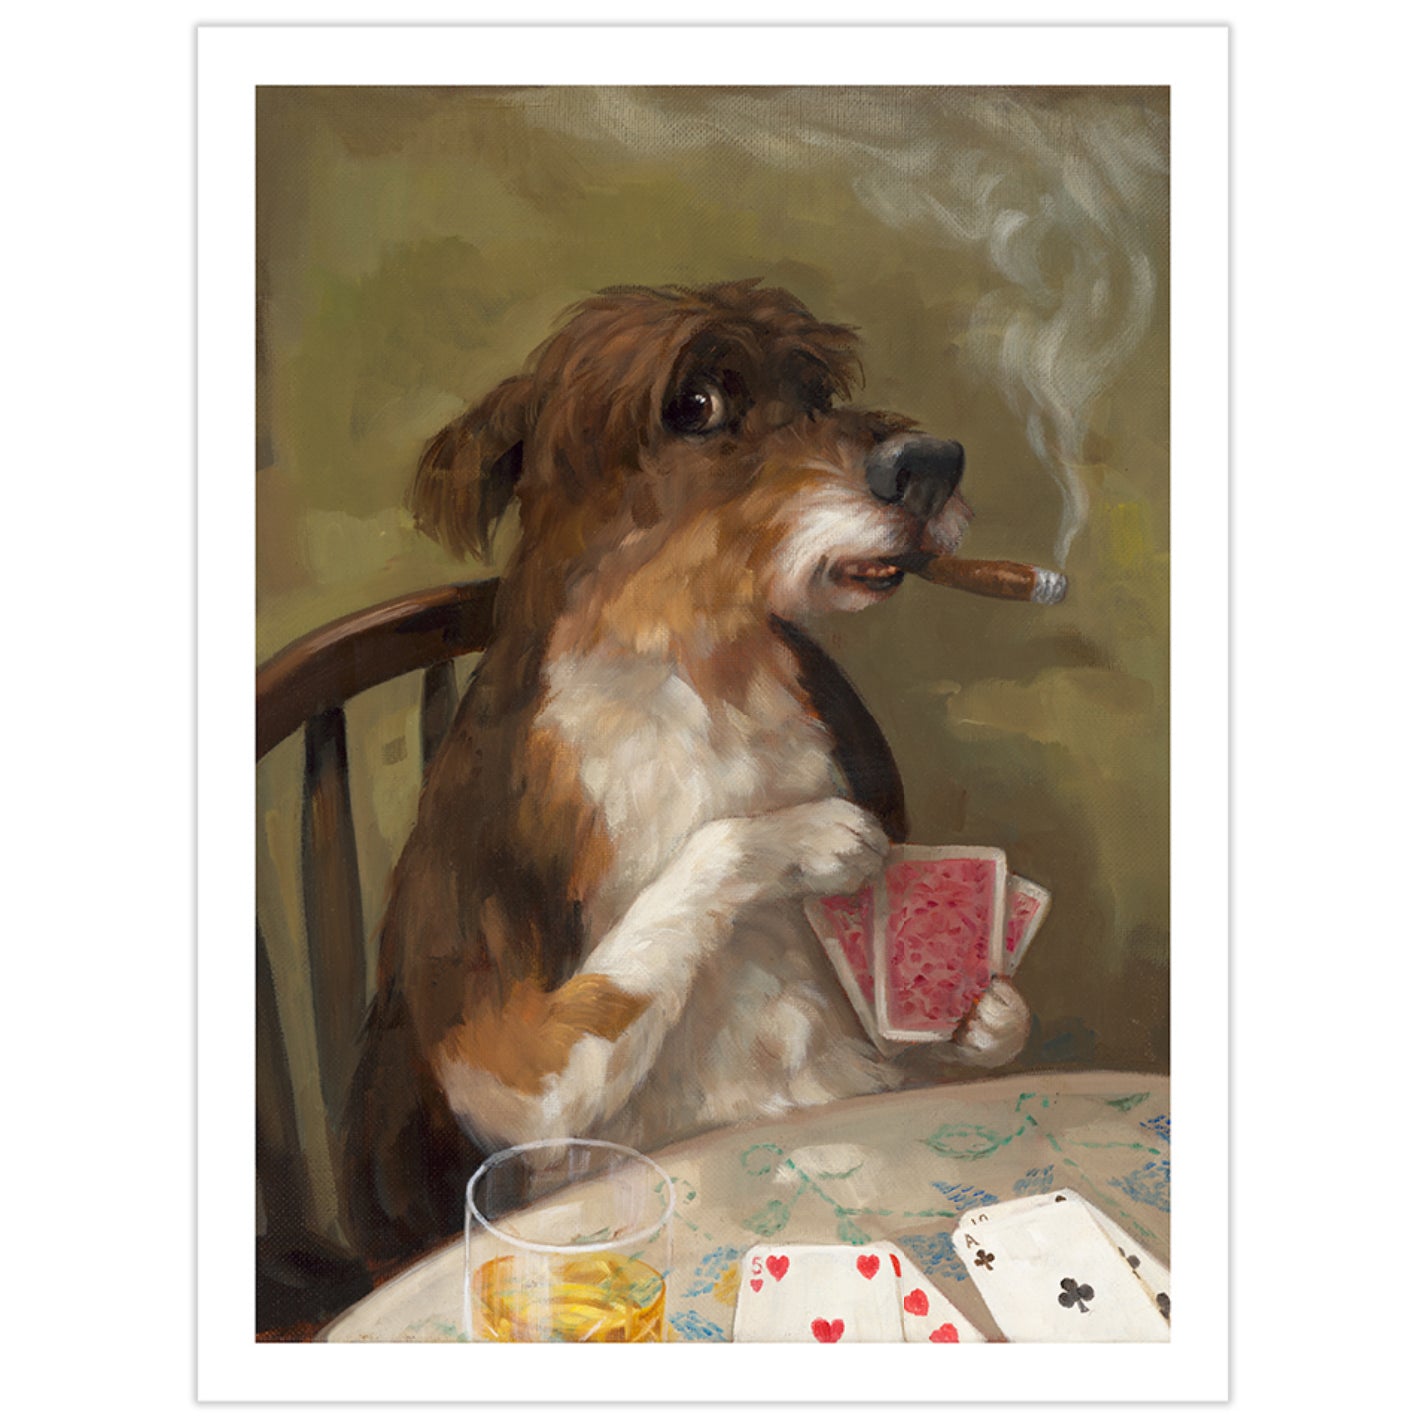  by Alison Friend titled Alison Friend - "Poker Night" Print